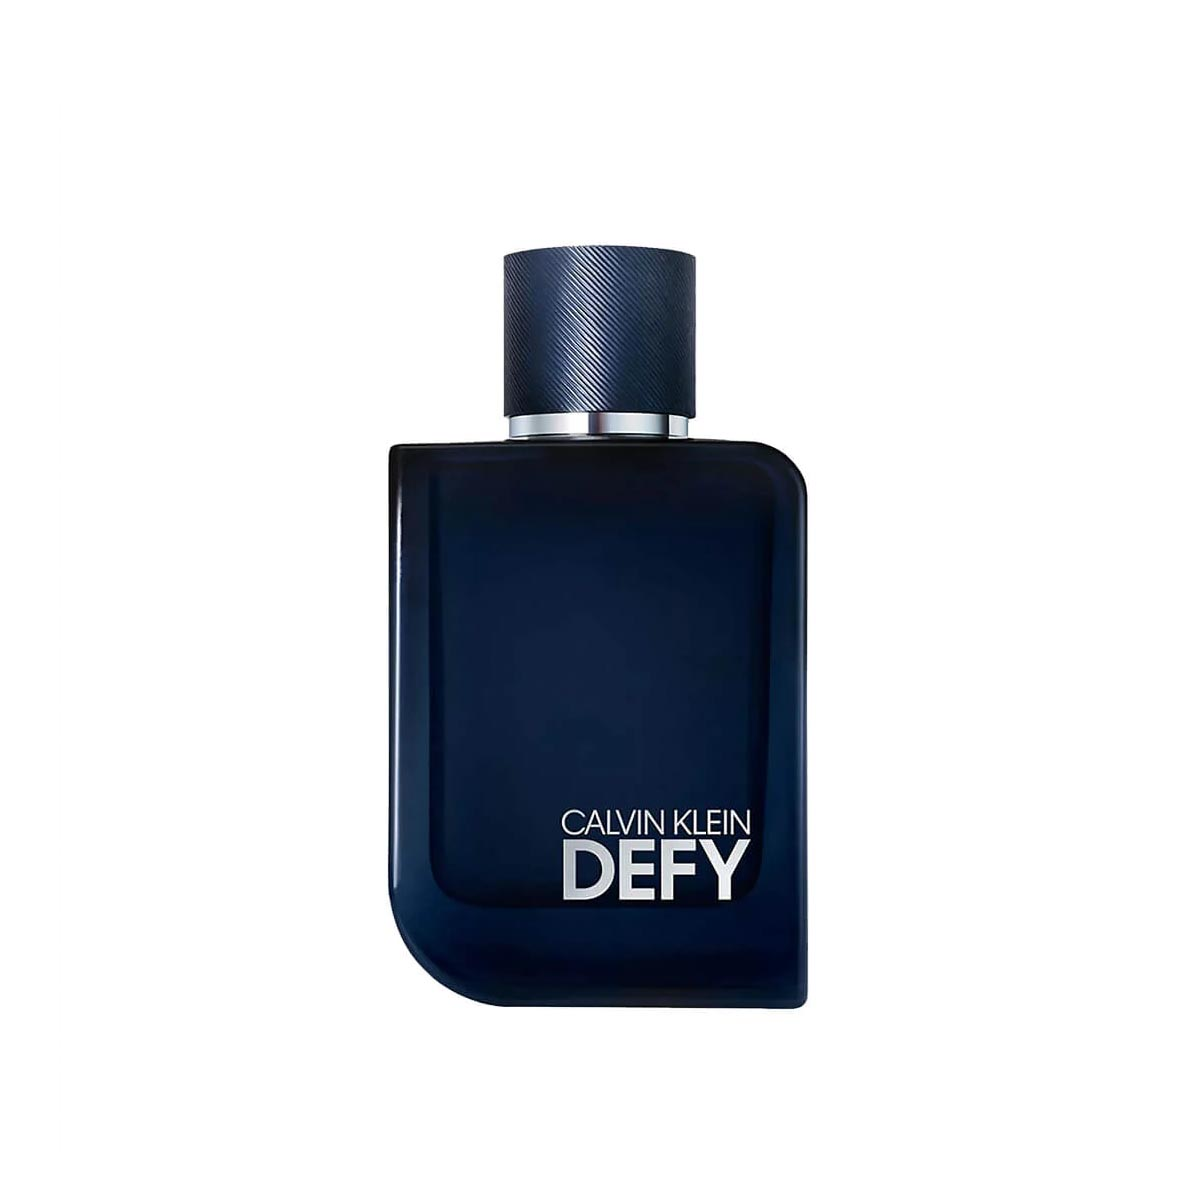   Calvin Klein Defy Parfum Men 100ml